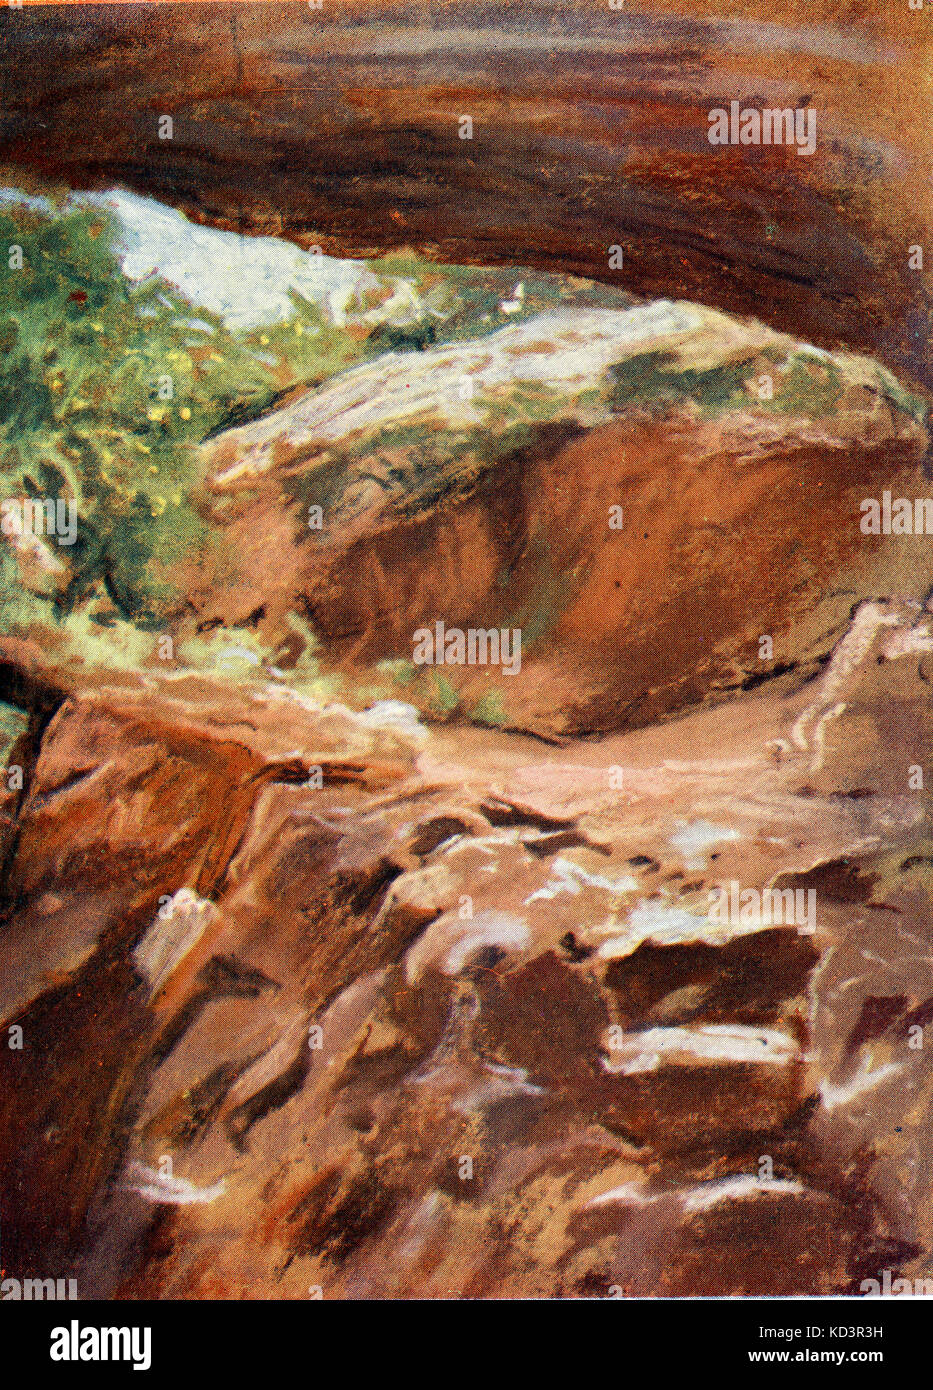 Ingresso alla grotta di Endor, la grotta della strega di Endor c.1910 di Harold Copping. Situato tra la collina di Moreh e il Monte Tabor nella Valle di Jezreel. Saul consultò la strega a Endor prima della sua fatale battaglia a Gilboa. Foto Stock